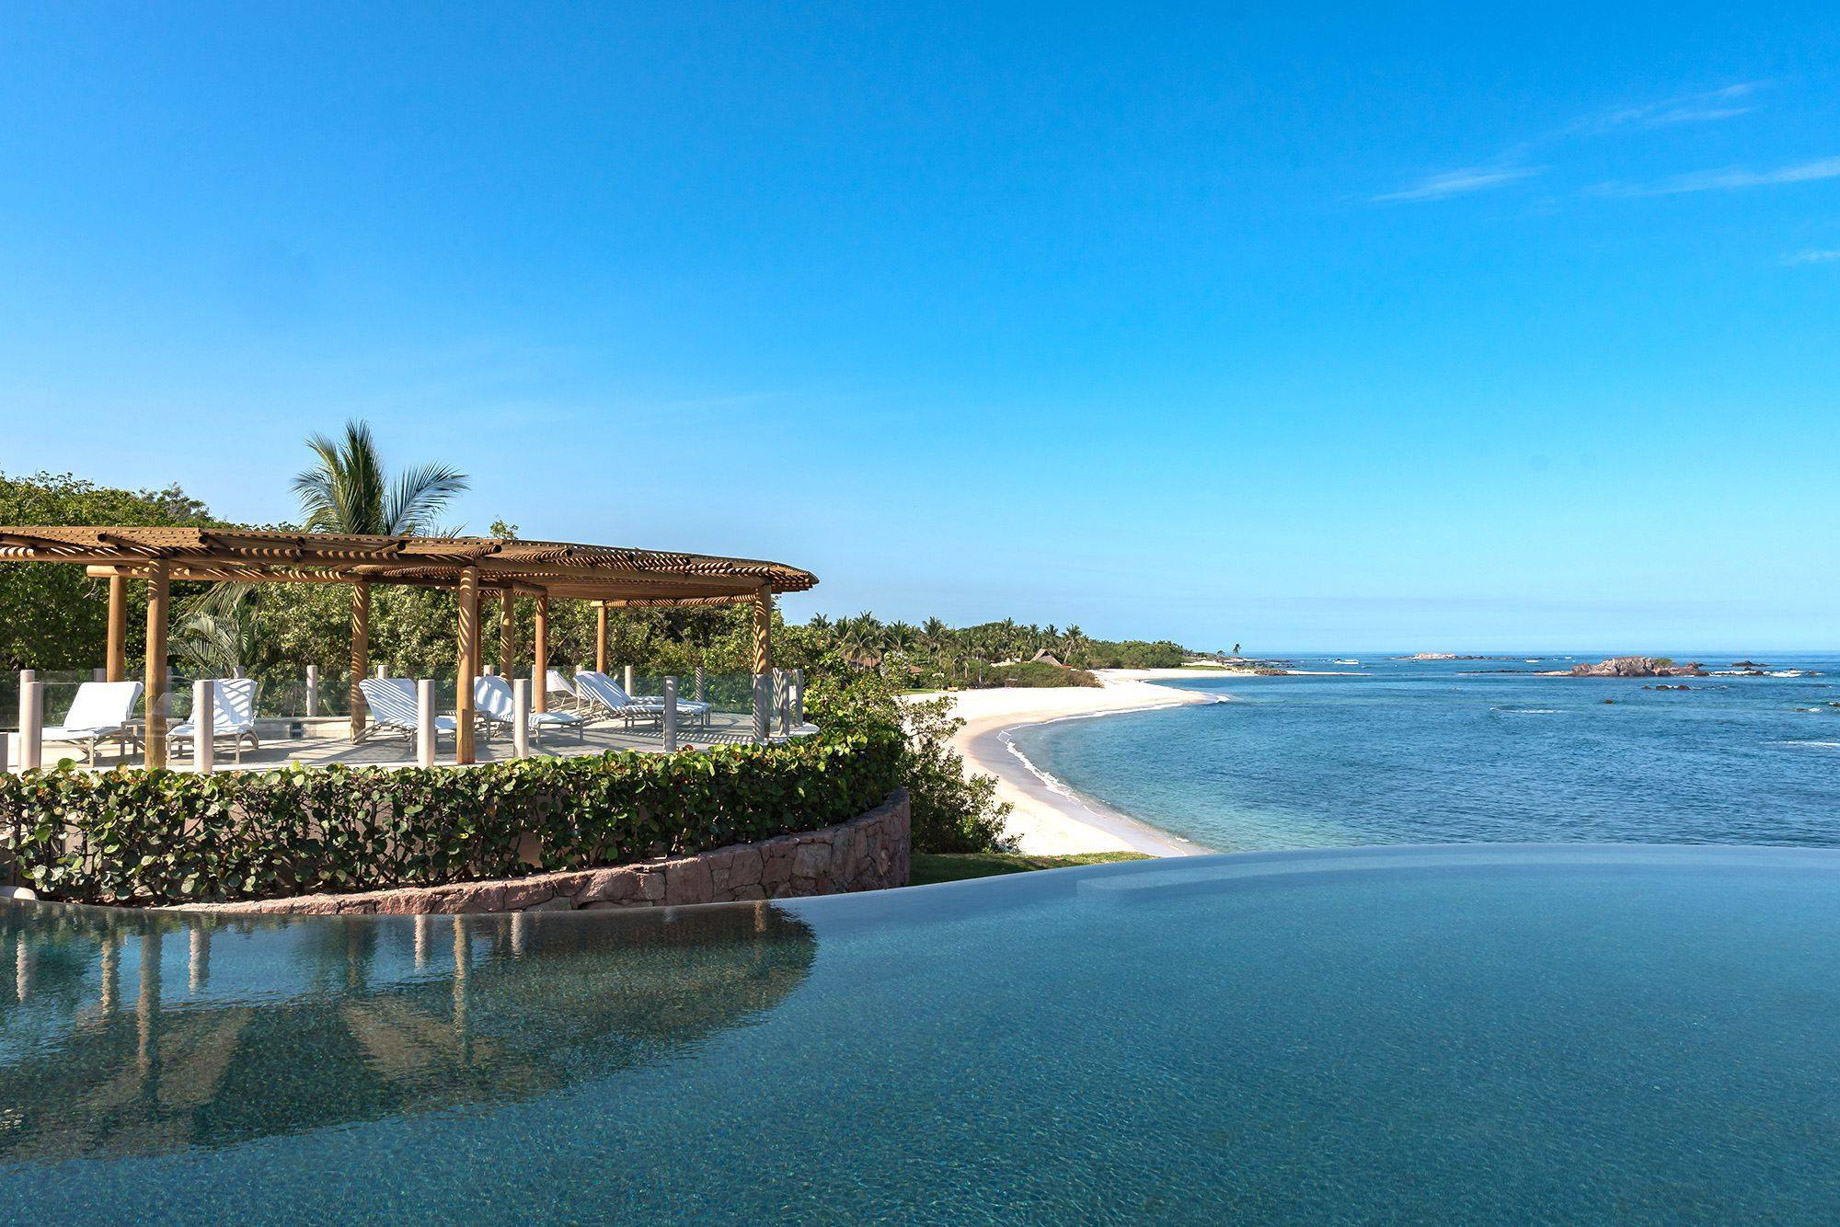 Four Seasons Resort Punta Mita – Nayarit, Mexico – Resort Pool Deck Ocean and Beach View